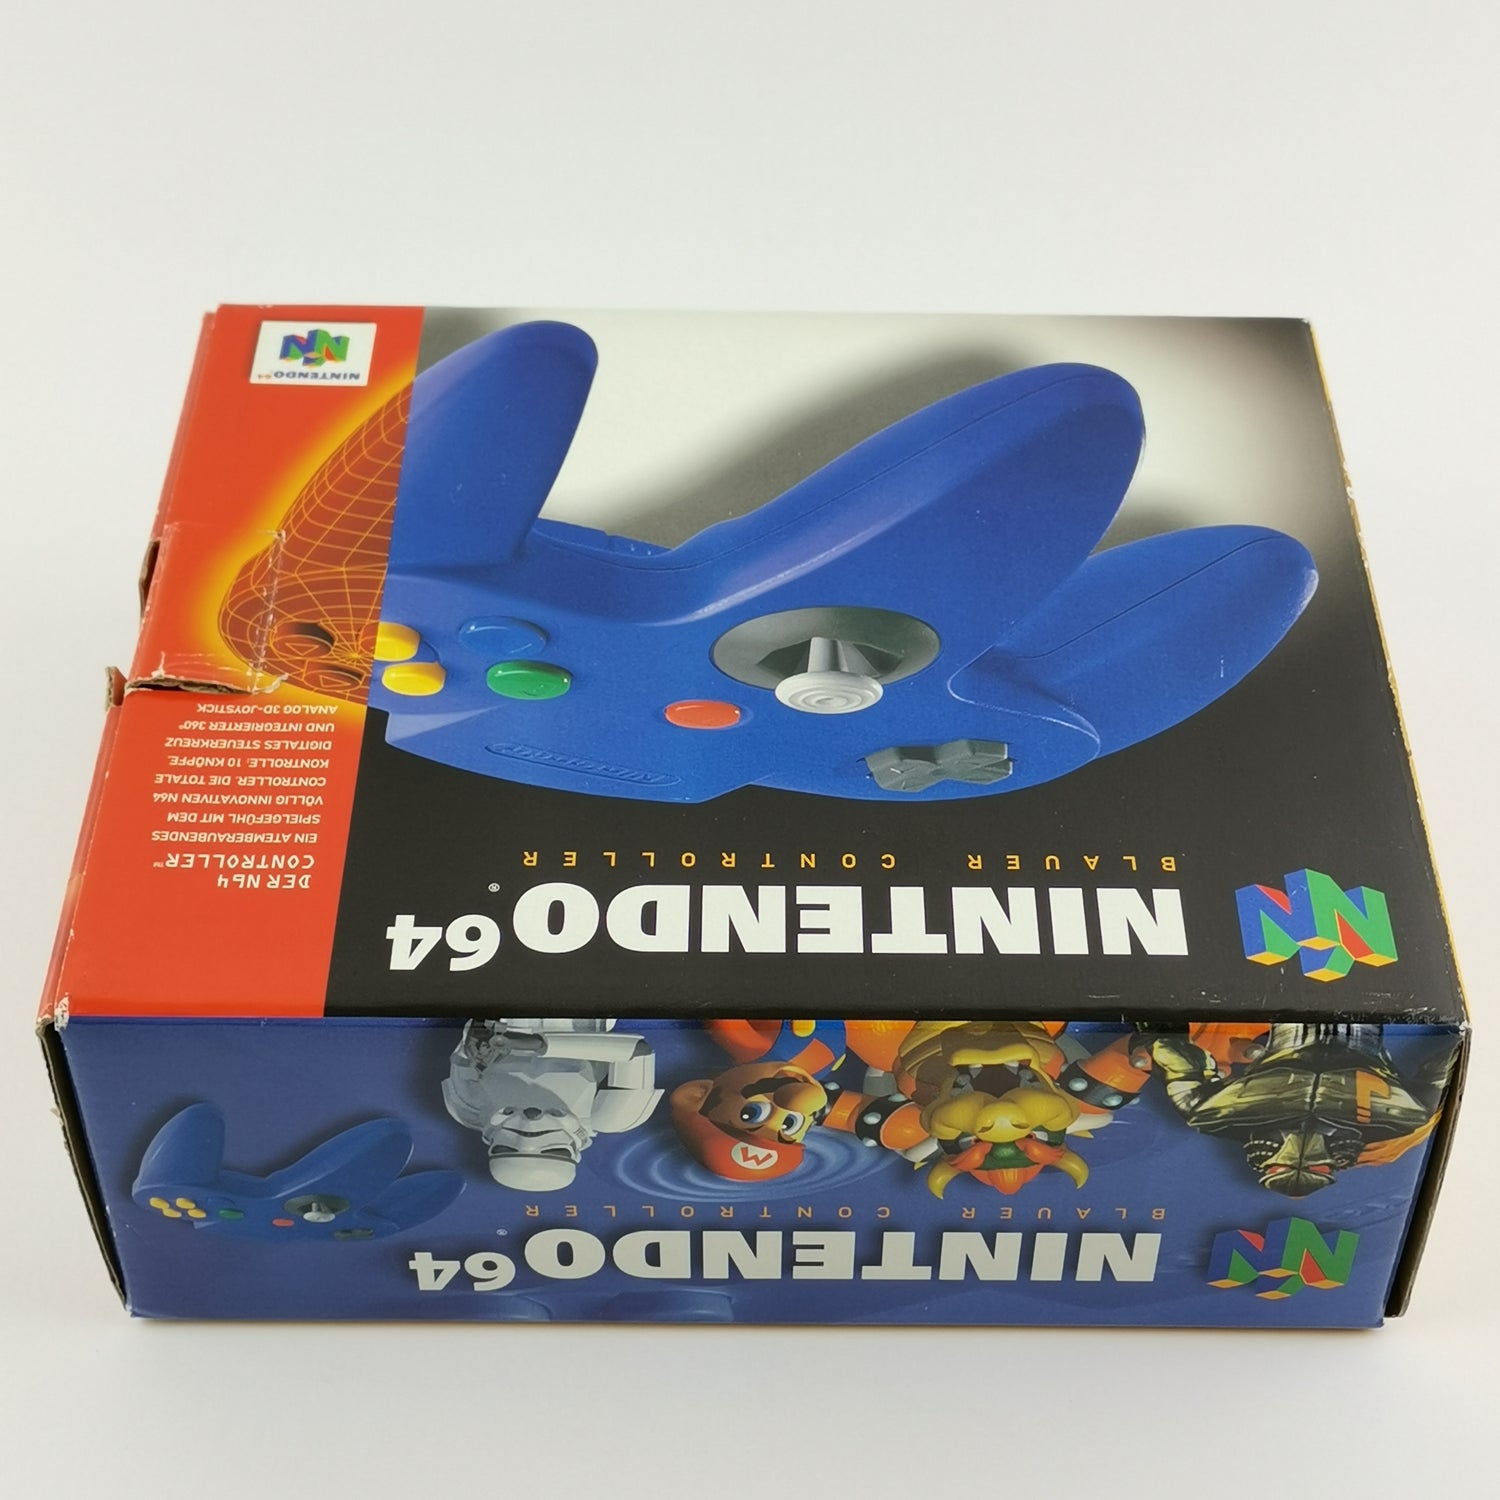 Nintendo 64 Blauer Controller : Gamepad Blau in OVP - Joypad | N64 PAL